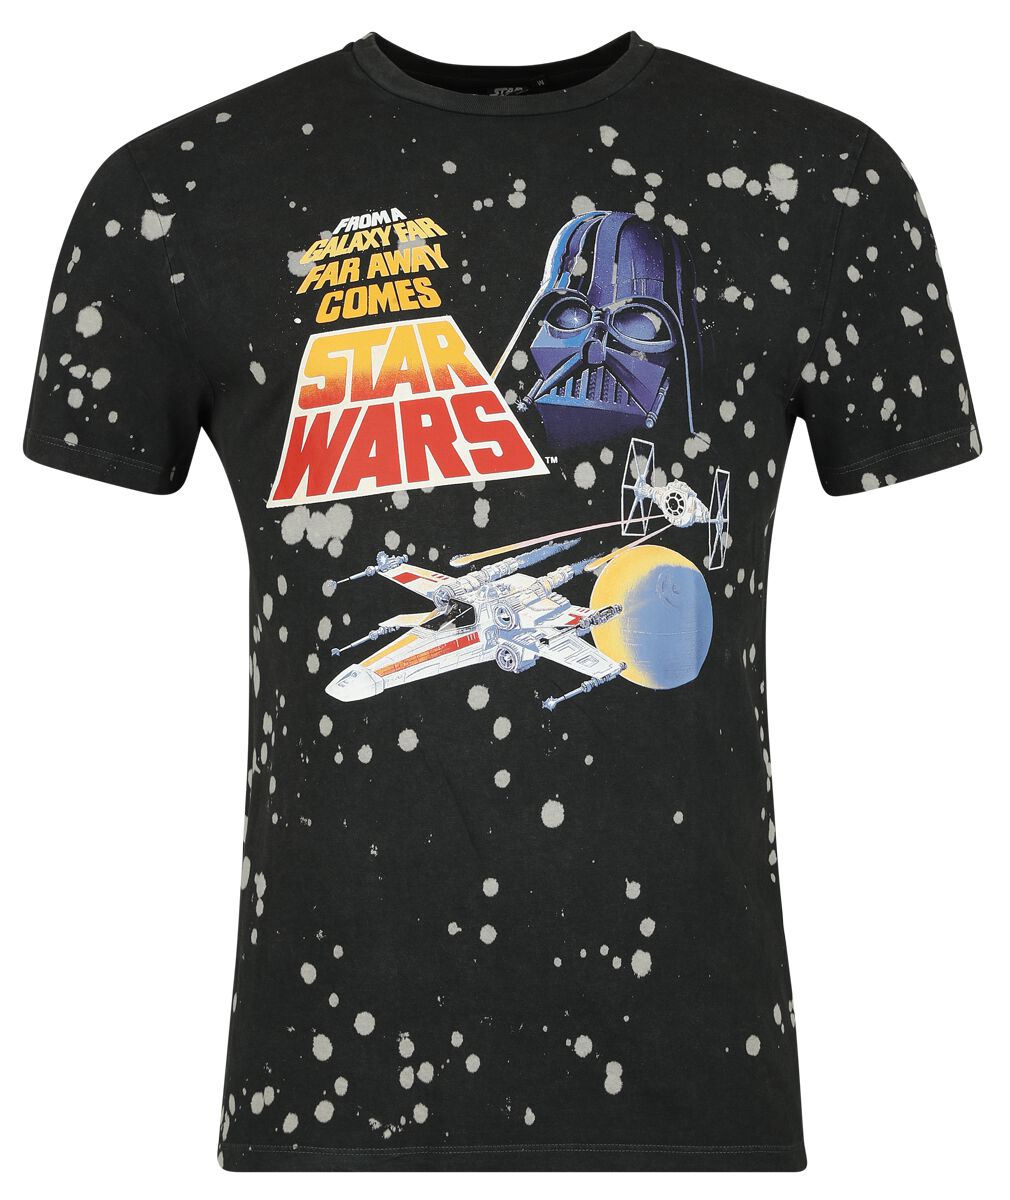 Star Wars T-Shirt - Classic - Space - S bis XXL - für Männer - Größe M - schwarz  - Lizenzierter Fanartikel